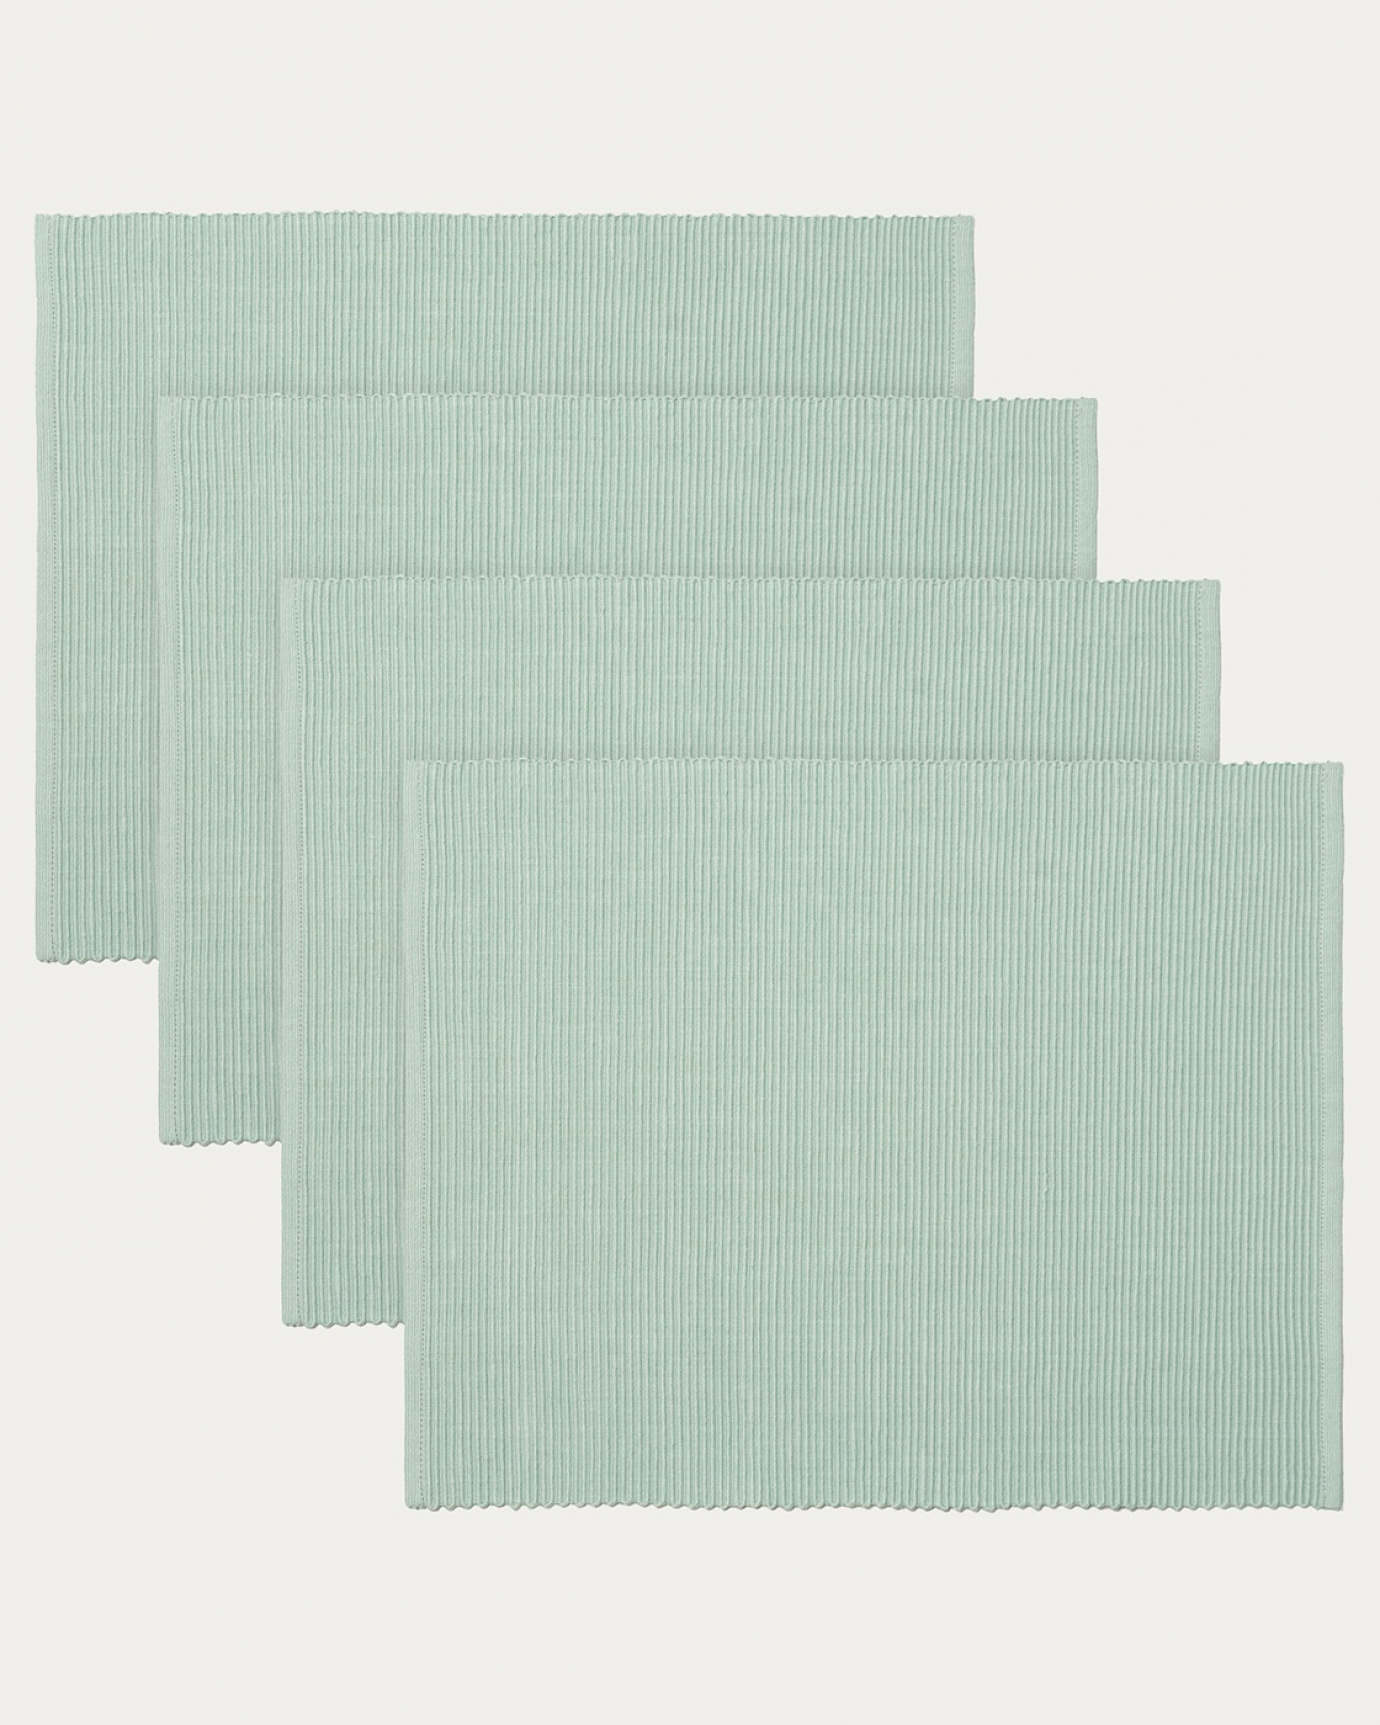 Immagine prodotto verde ghiaccio chiaro tovaglietta UNI in morbido cotone a costine di qualità di LINUM DESIGN. Dimensioni 35x46 cm e venduto in 4-pezzi.